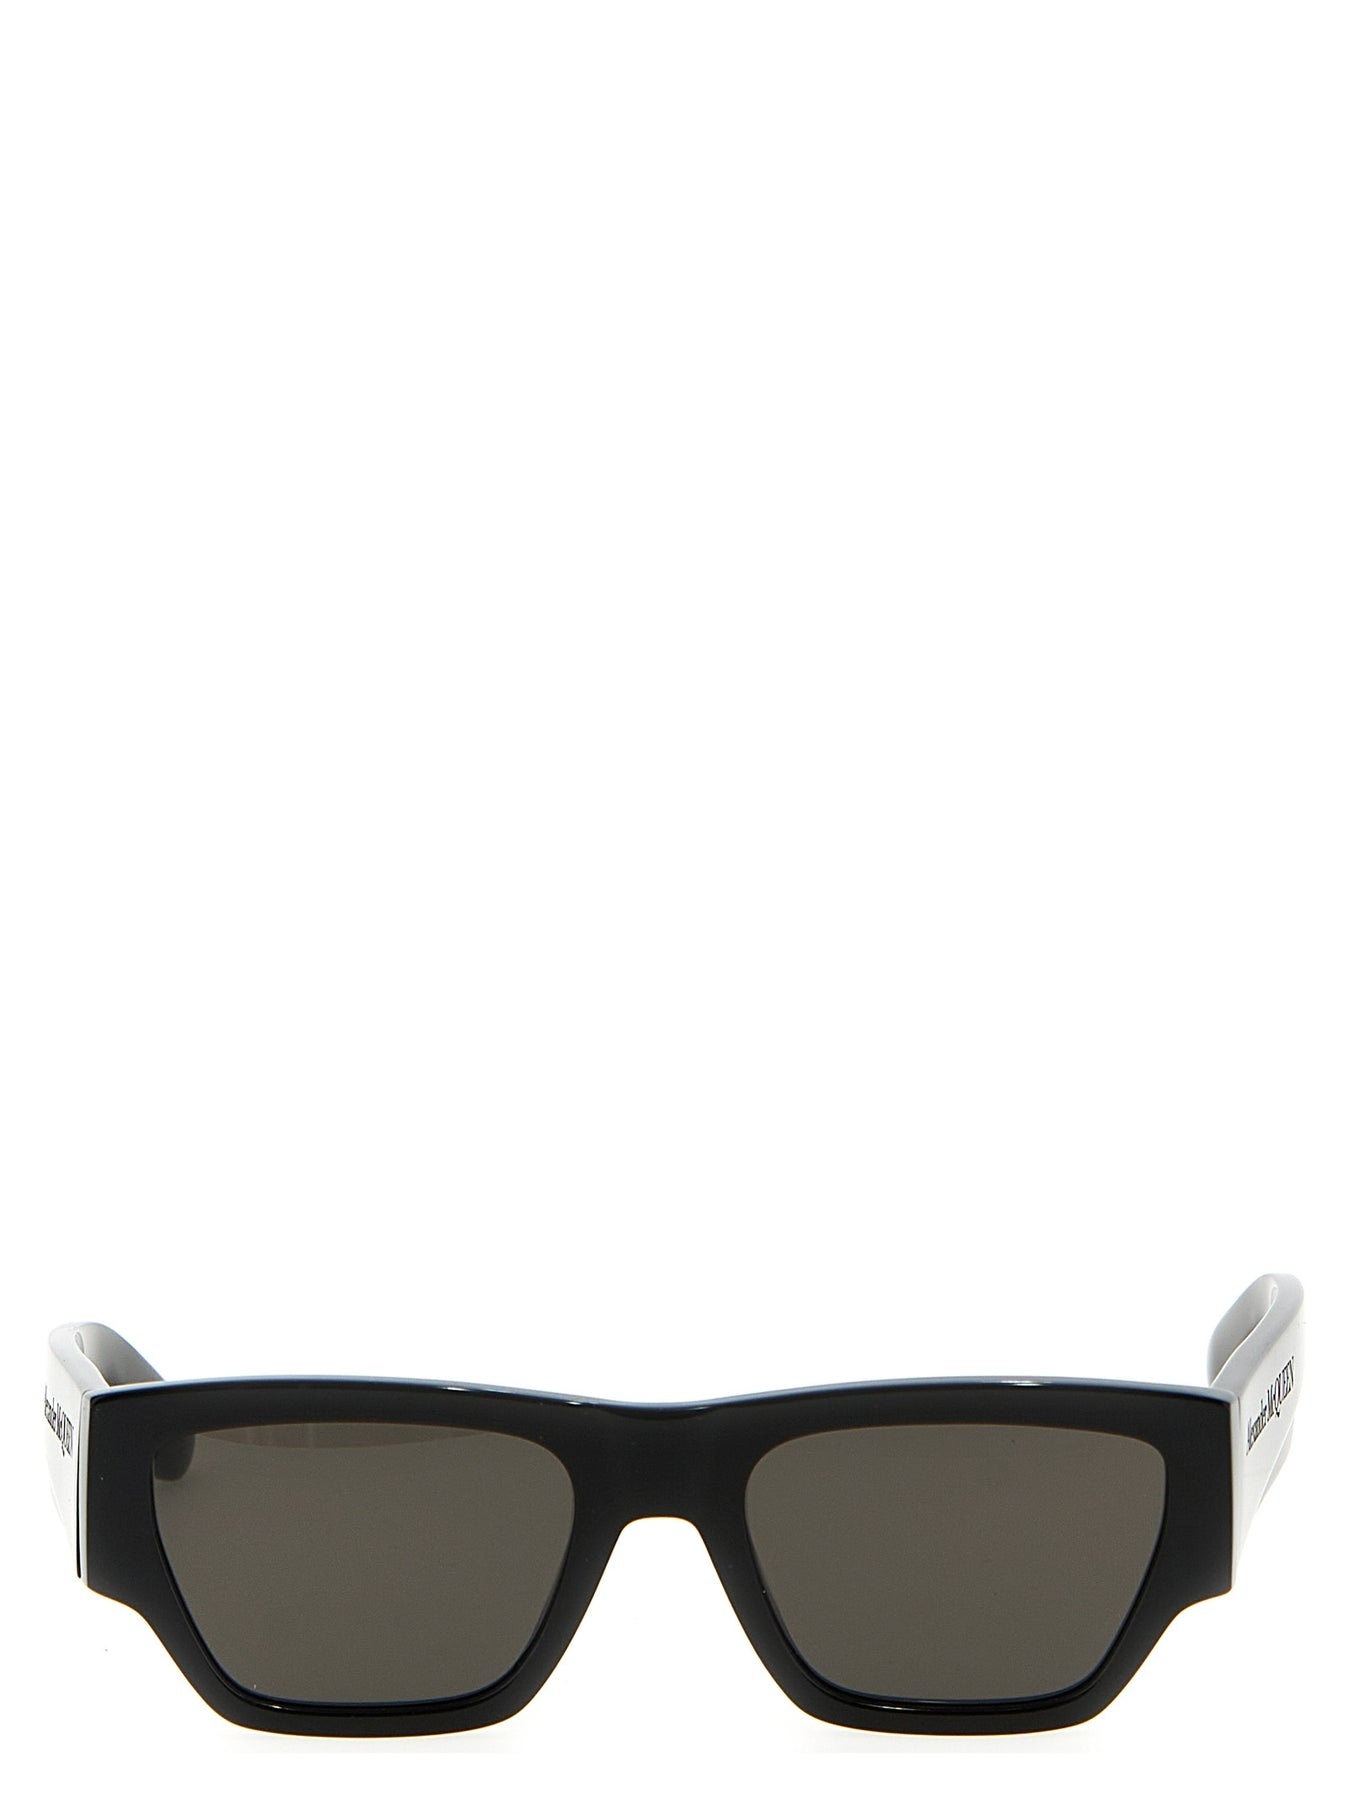 Mcqueen Angled Sunglasses Black - 1